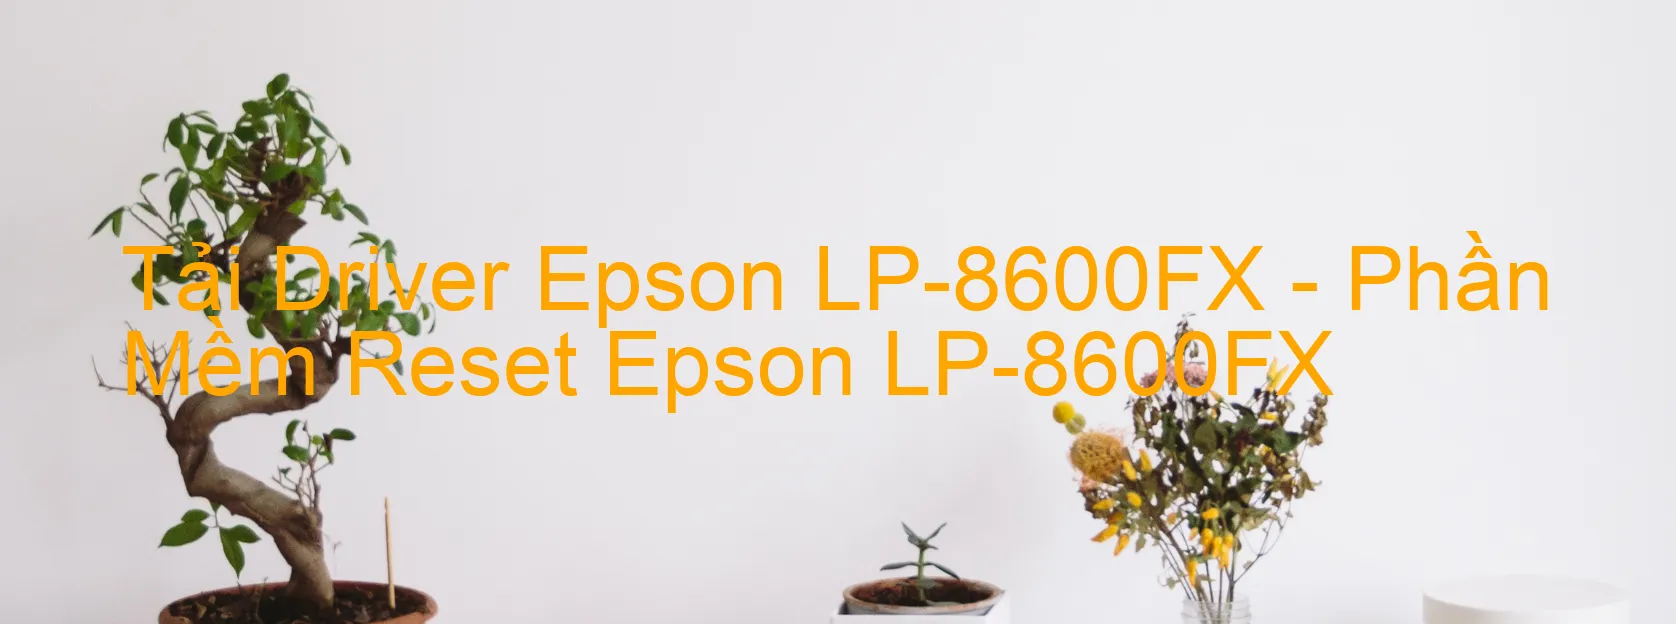 Driver Epson LP-8600FX, Phần Mềm Reset Epson LP-8600FX